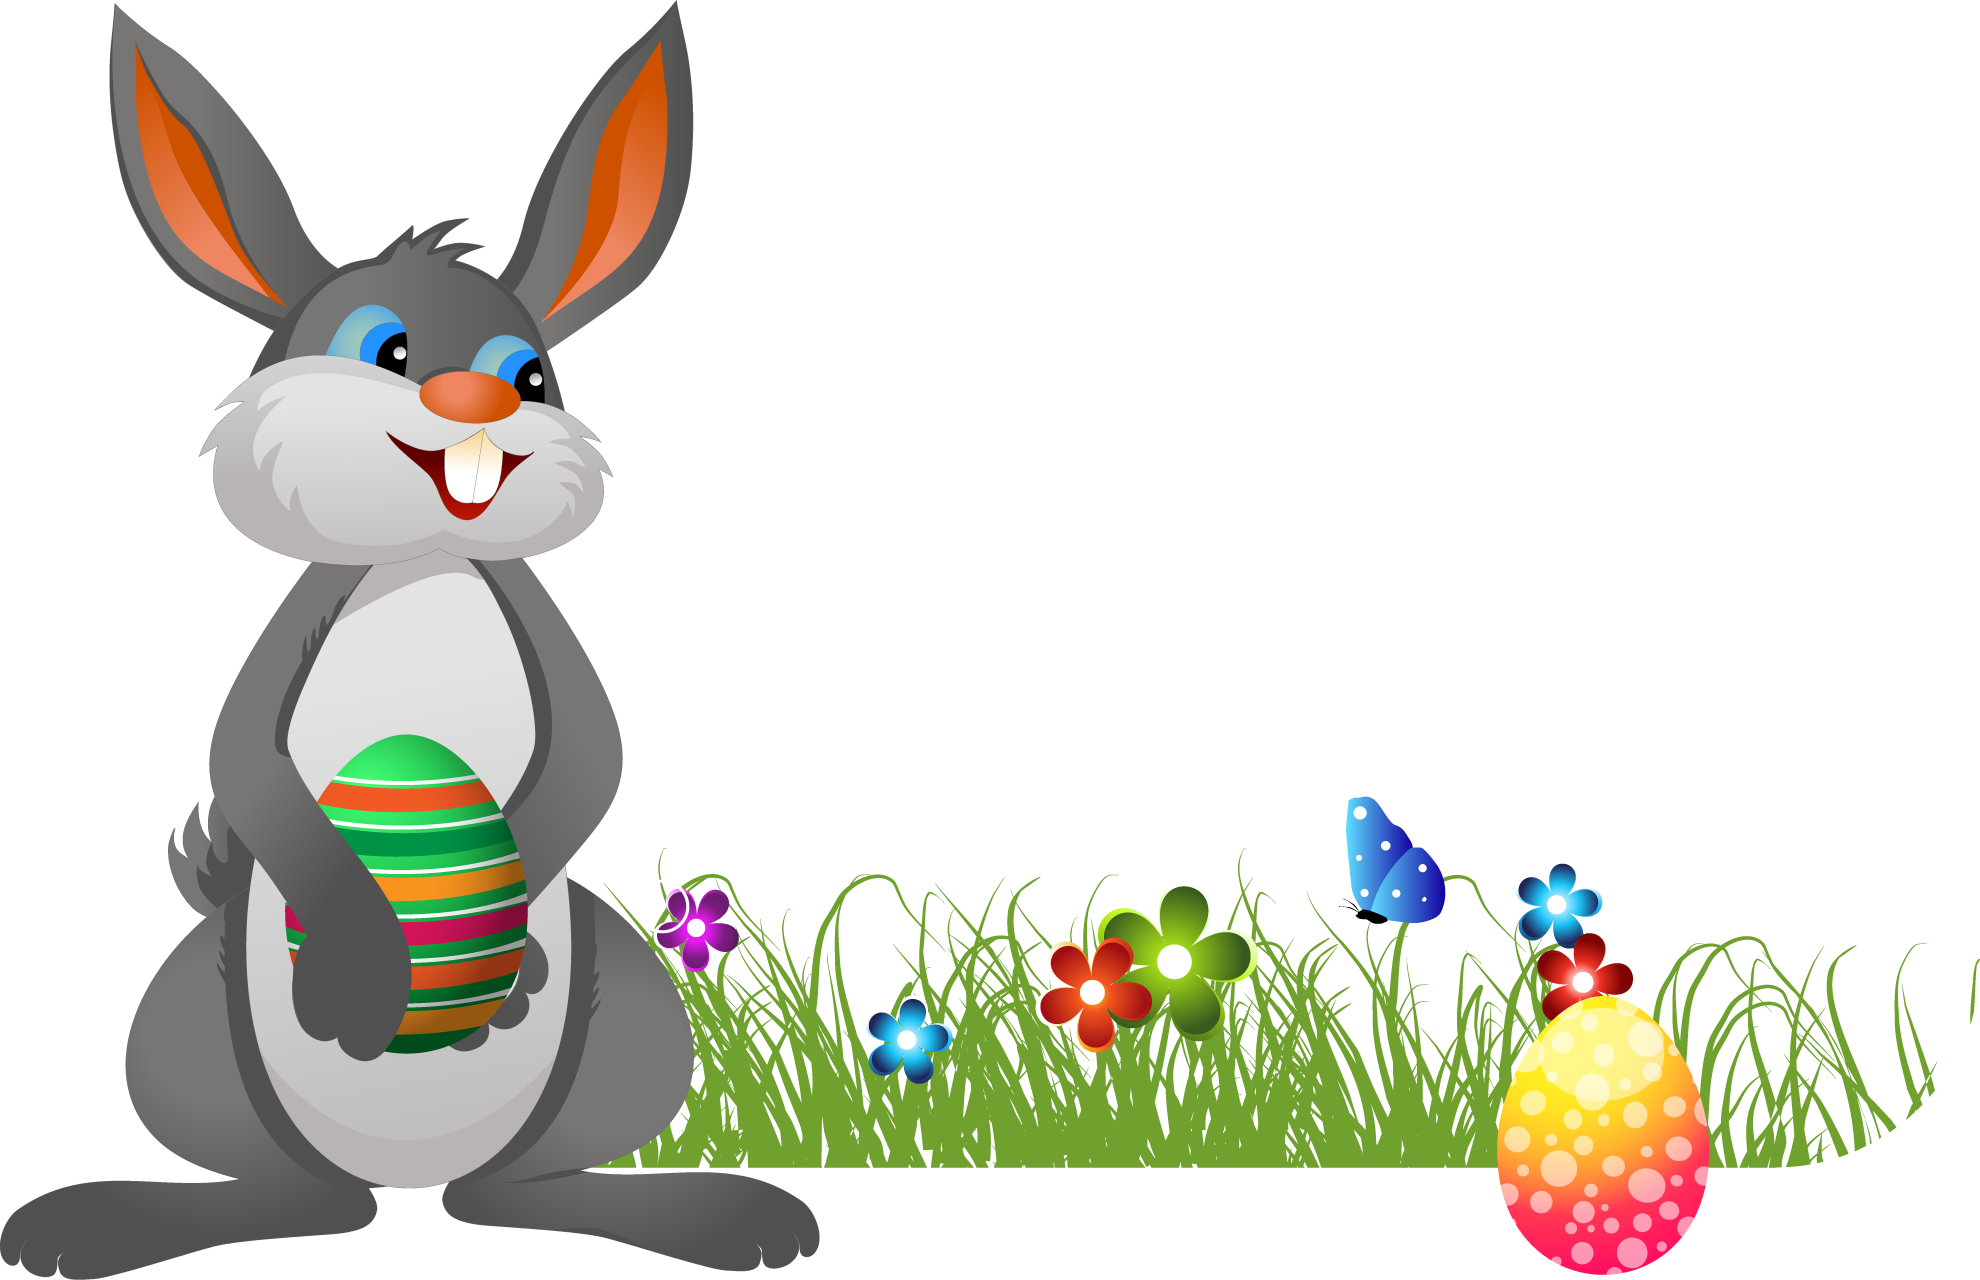 Easter Bunny PNG: Thế giới đang rộn ràng chuẩn bị đón lễ Phục Sinh và đại diện cho ngày lễ này không thể nào thiếu được chú thỏ tinh nghịch và dễ thương. Click ngay vào hình ảnh PNG của chú thỏ trong bộ sưu tập để được ngắm nhìn vẻ đáng yêu ấy.